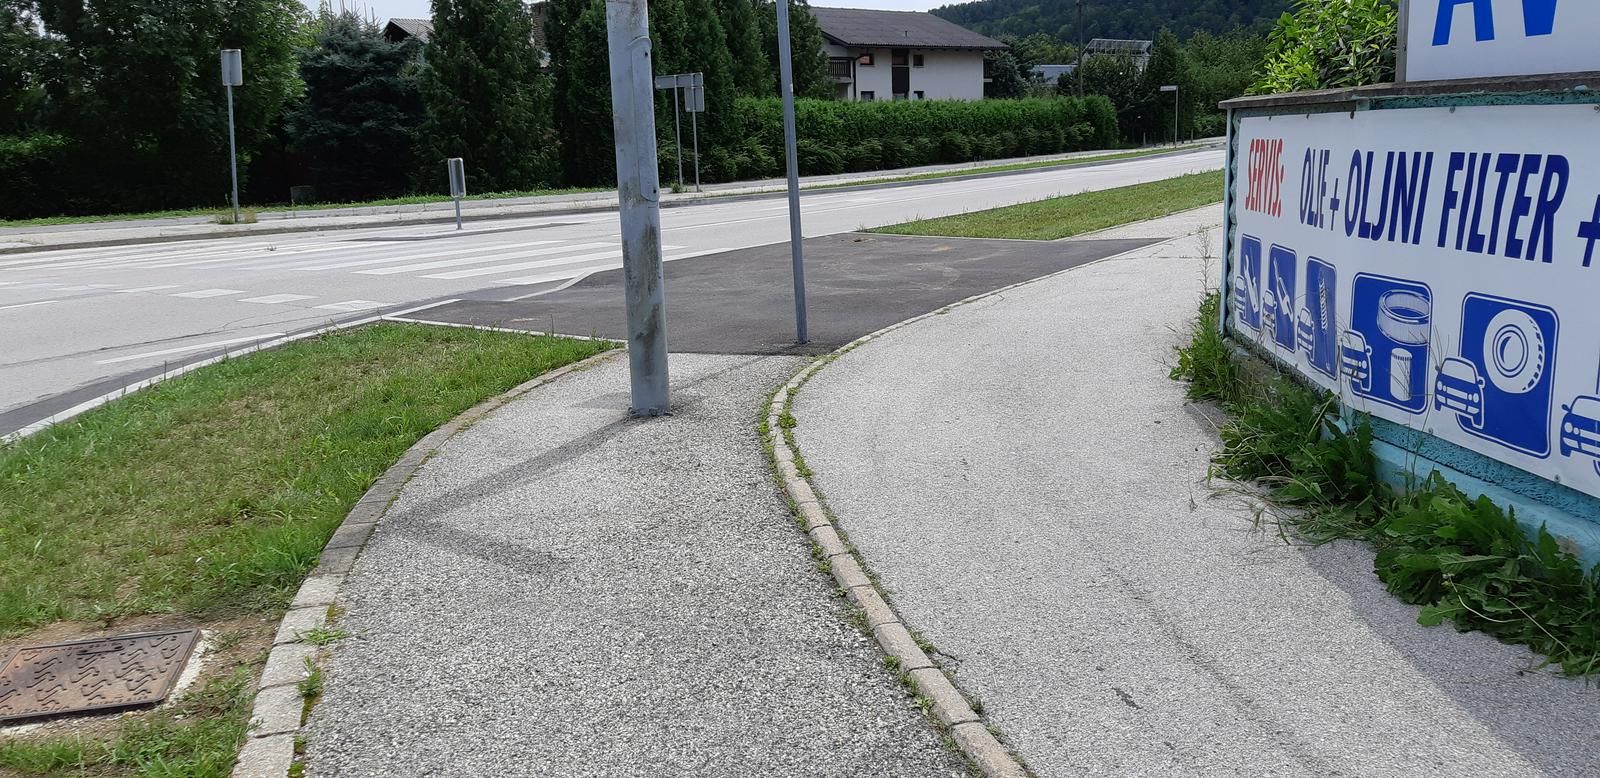 Med nezglednimi primeri je tudi Kardeljeva cesta, kjer je kolesarska steza slabo označena, posredi pa so postavljeni drogovi. Foto: Mariborska kolesarska mreža - Spletni zemljevid -  Problemi kolesarjev in pešcev